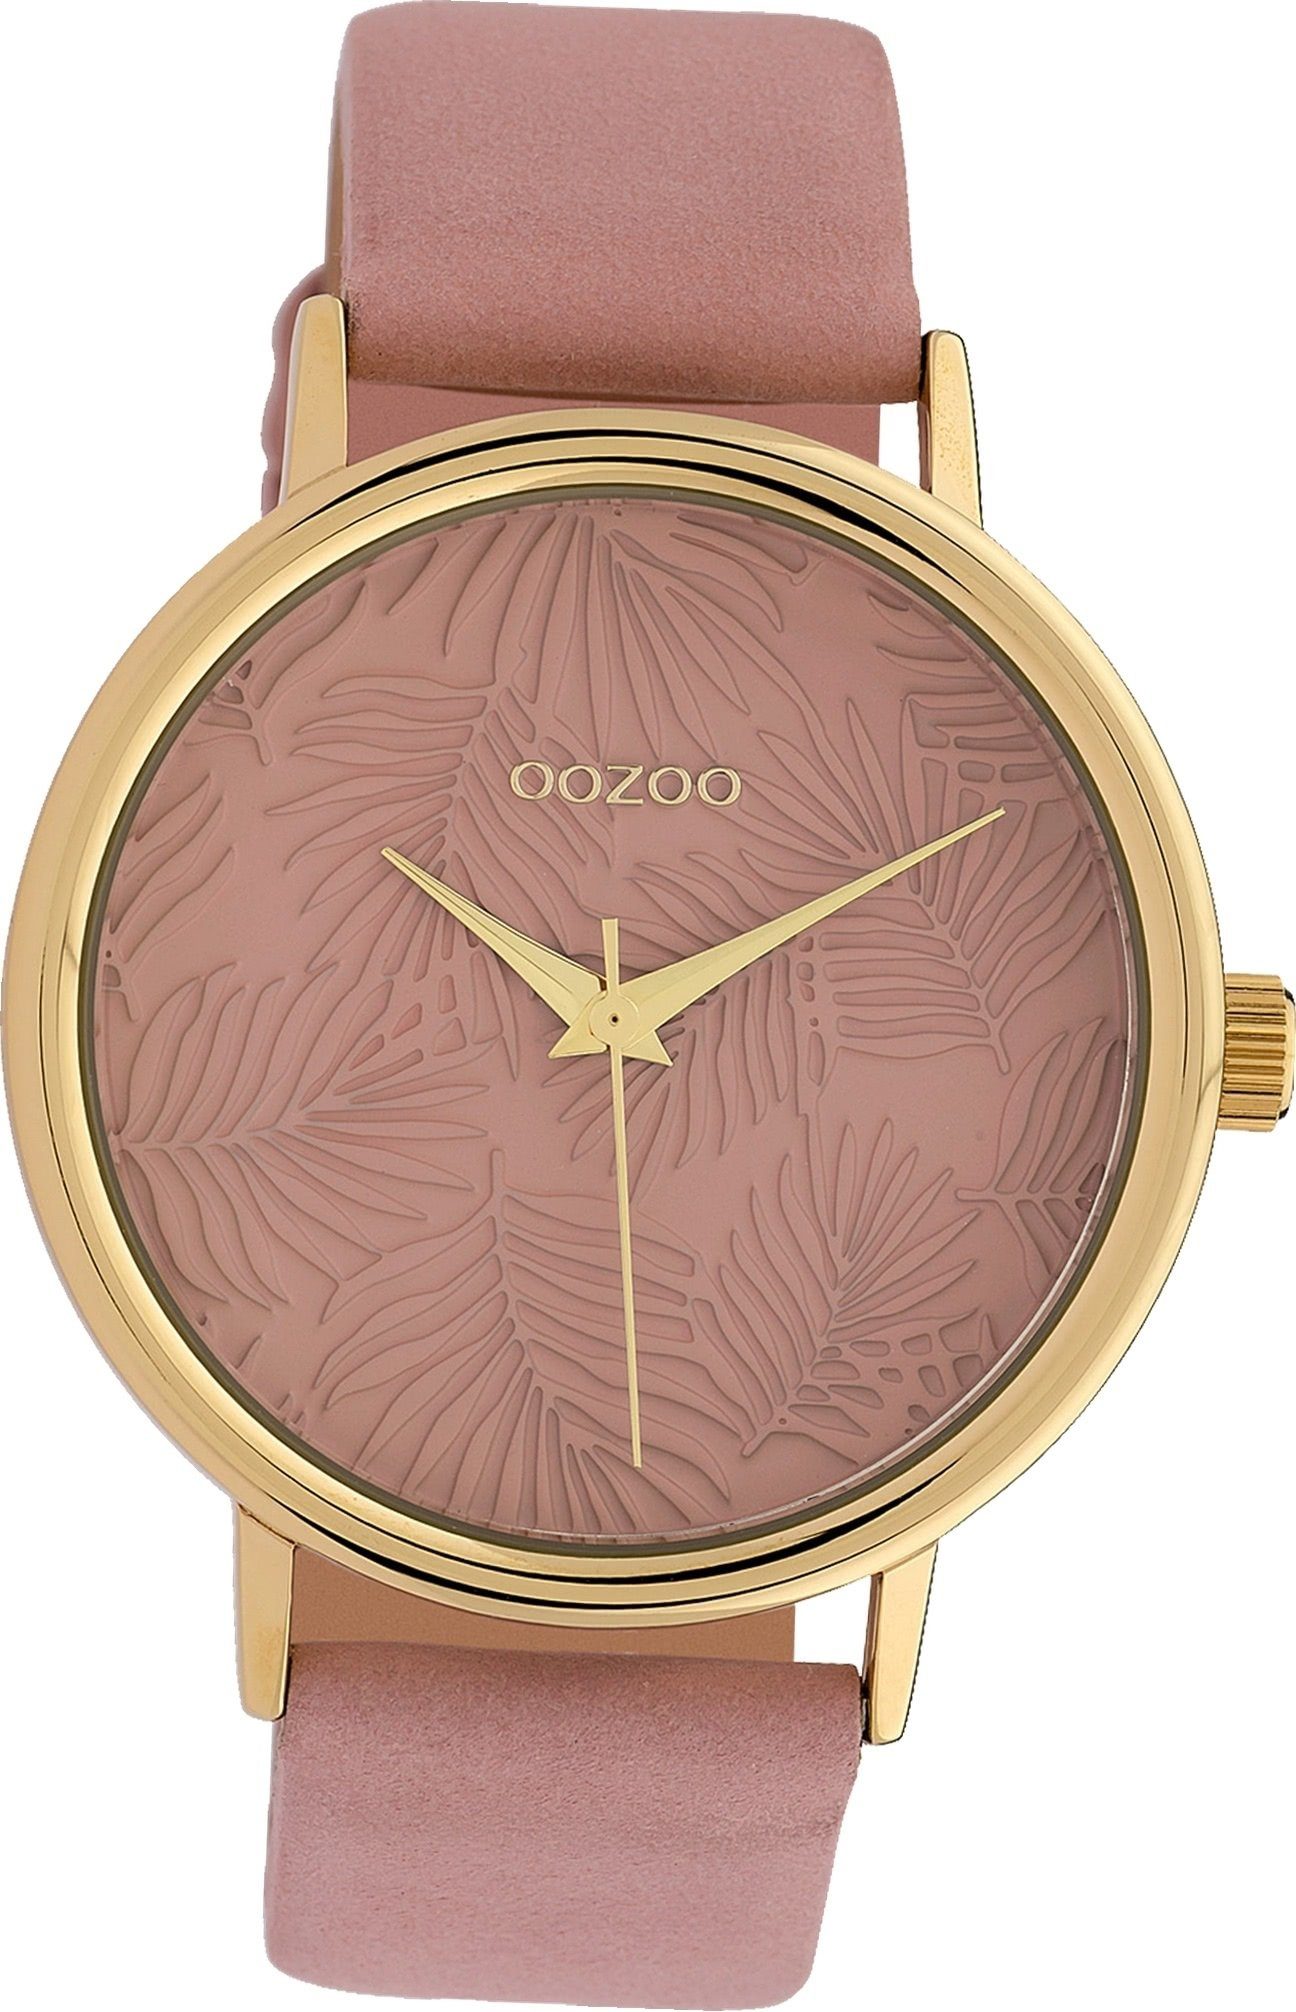 OOZOO Quarzuhr Oozoo Leder Damen Uhr C10081 Analog, Damenuhr Lederarmband altrosa, rundes Gehäuse, groß (ca. 42mm)